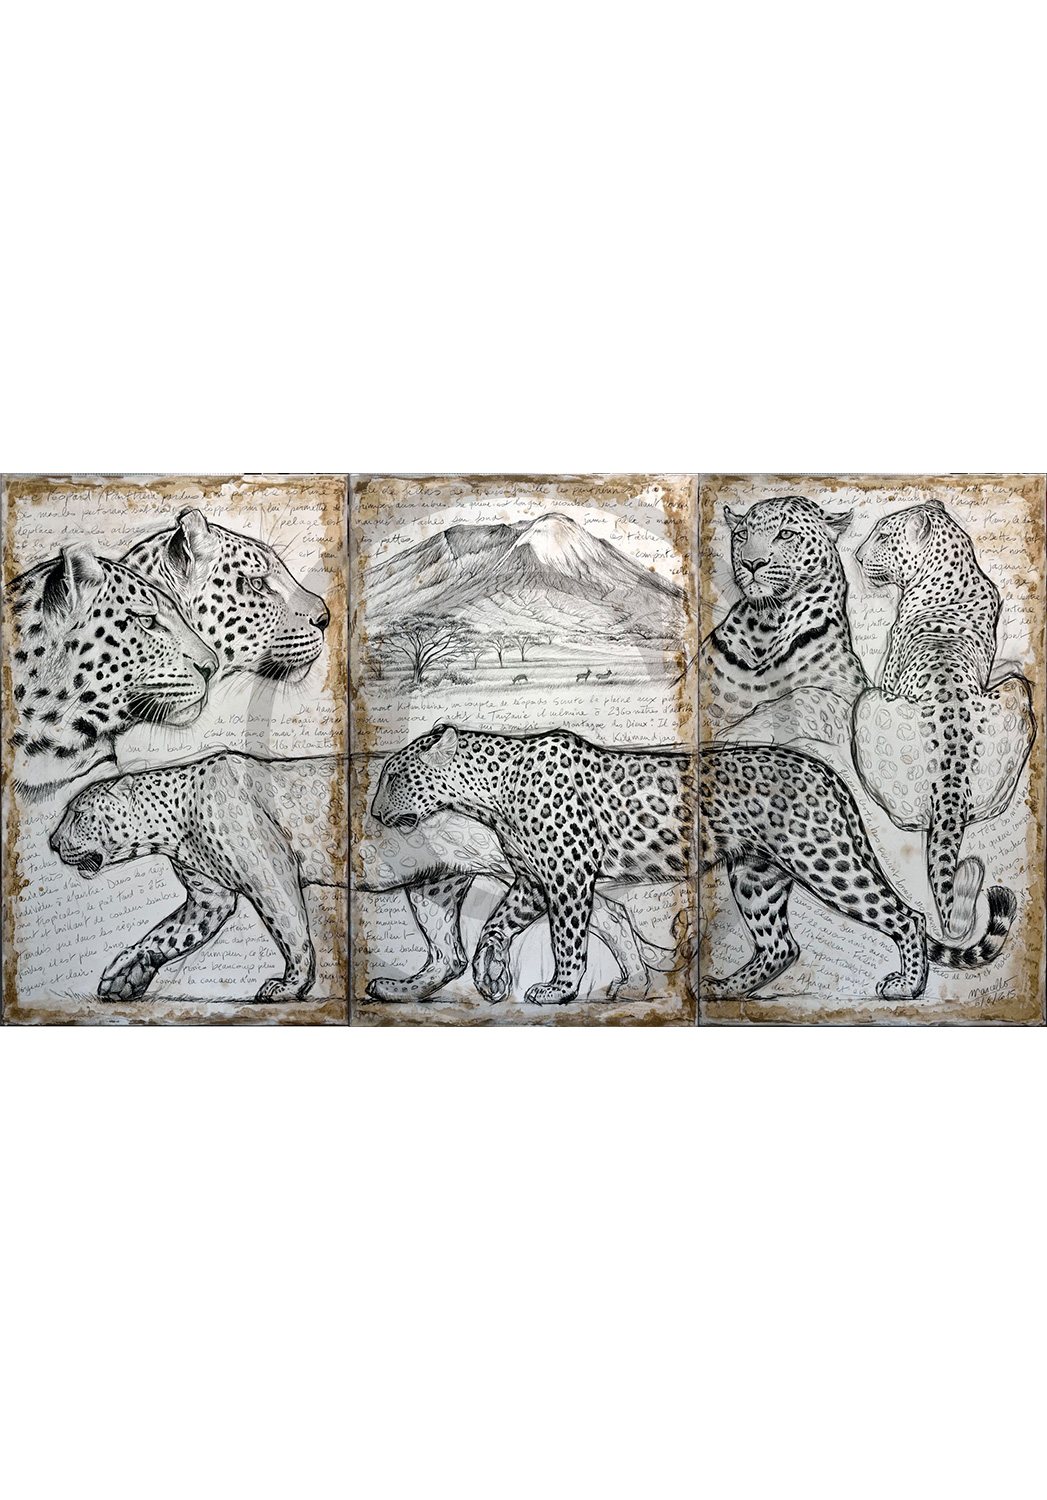 Marcello-art : Originaux sur toile 296 - Triptyque léopards kitumbeine